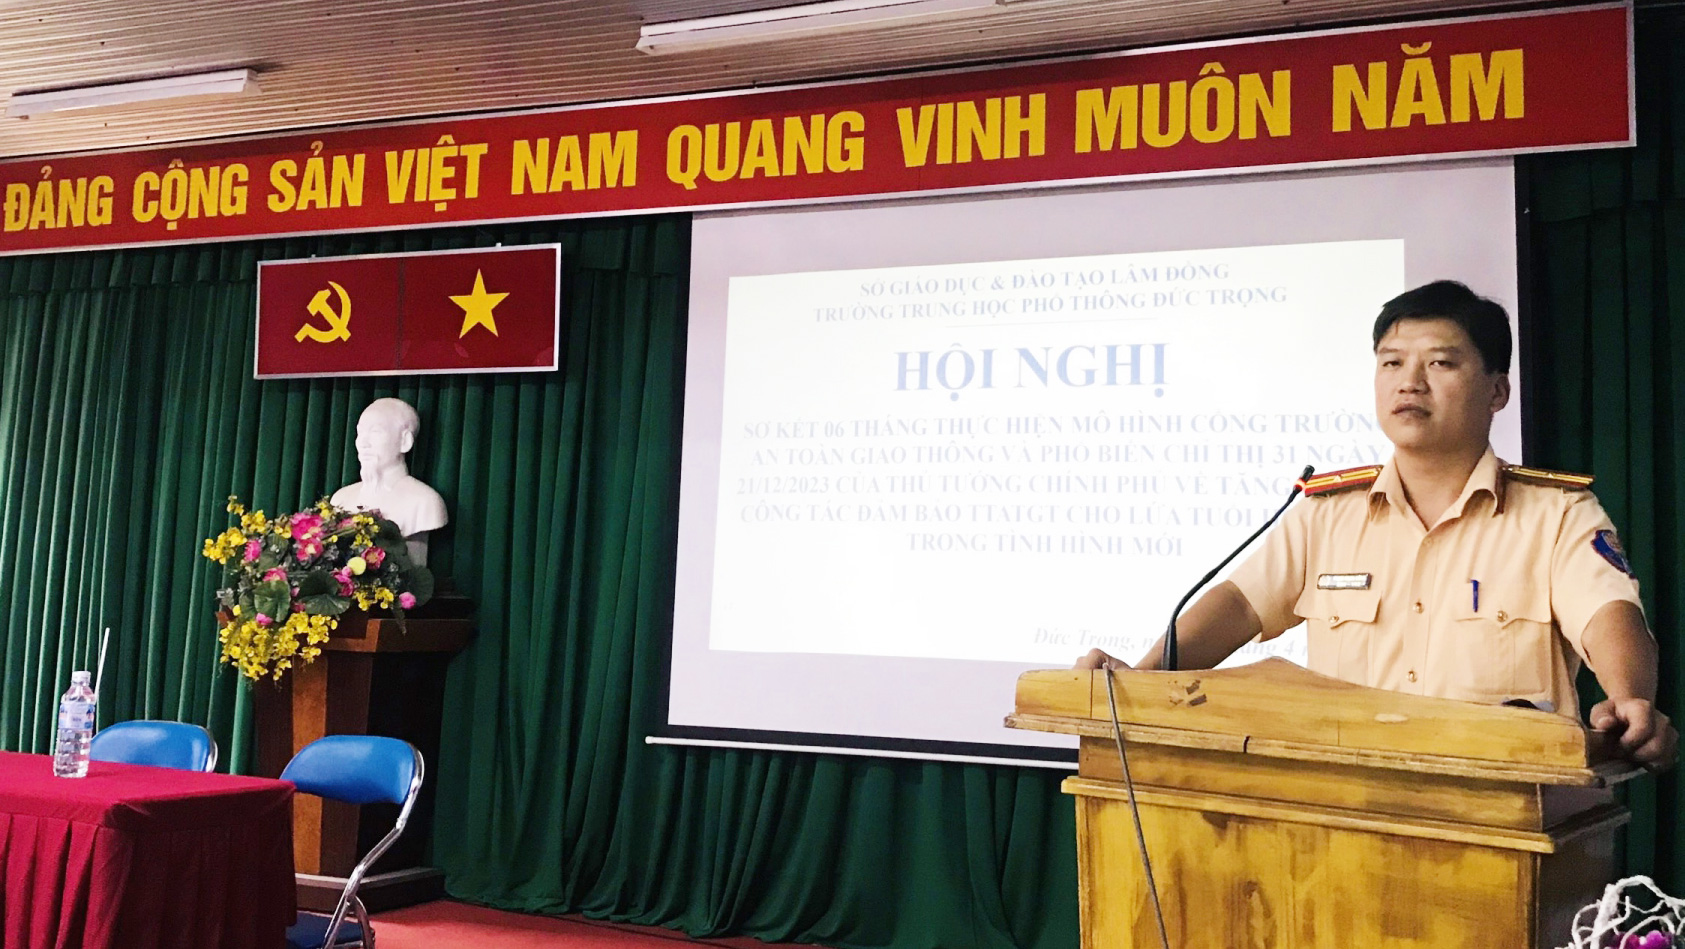 Thiếu tá Phạm Mạnh Công - báo cáo viên chuyên đề ATGT, báo cáo tại hội nghị